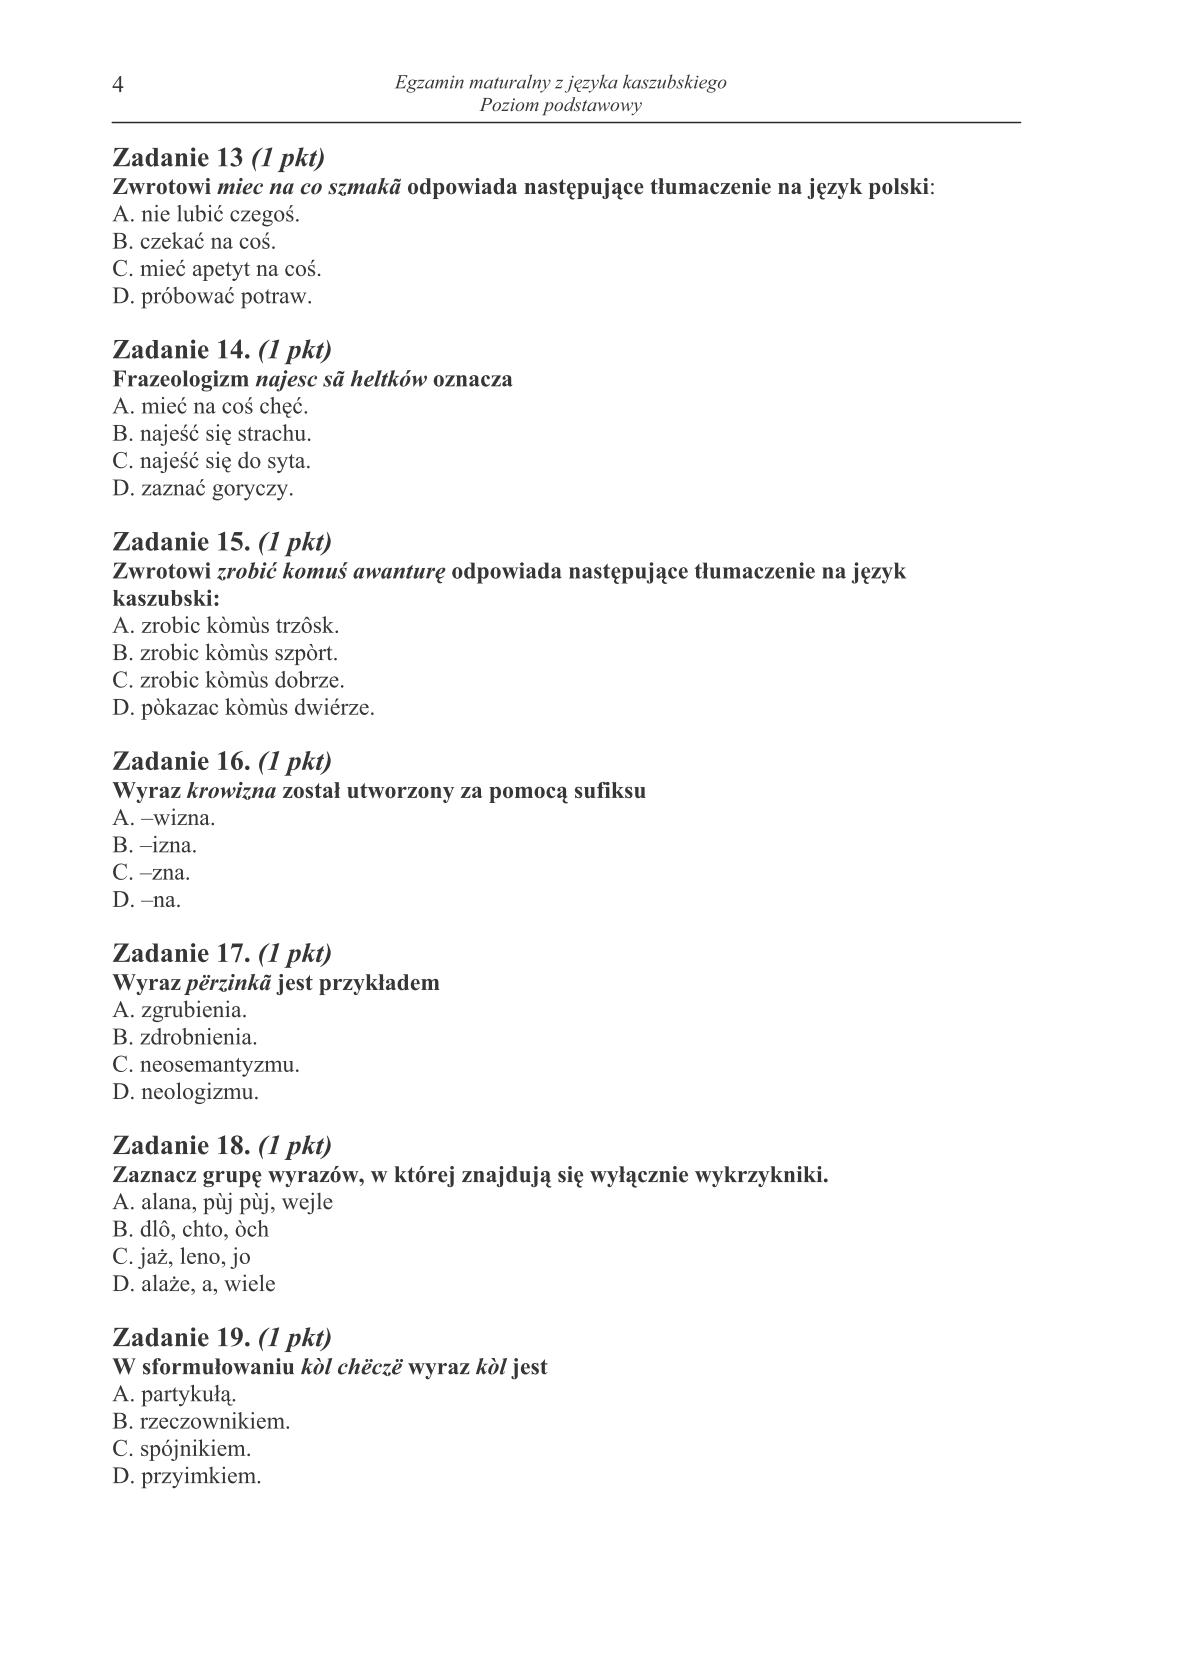 pytania-jezyk-kaszubski-poziom-podstawowy-matura-2014-str.4